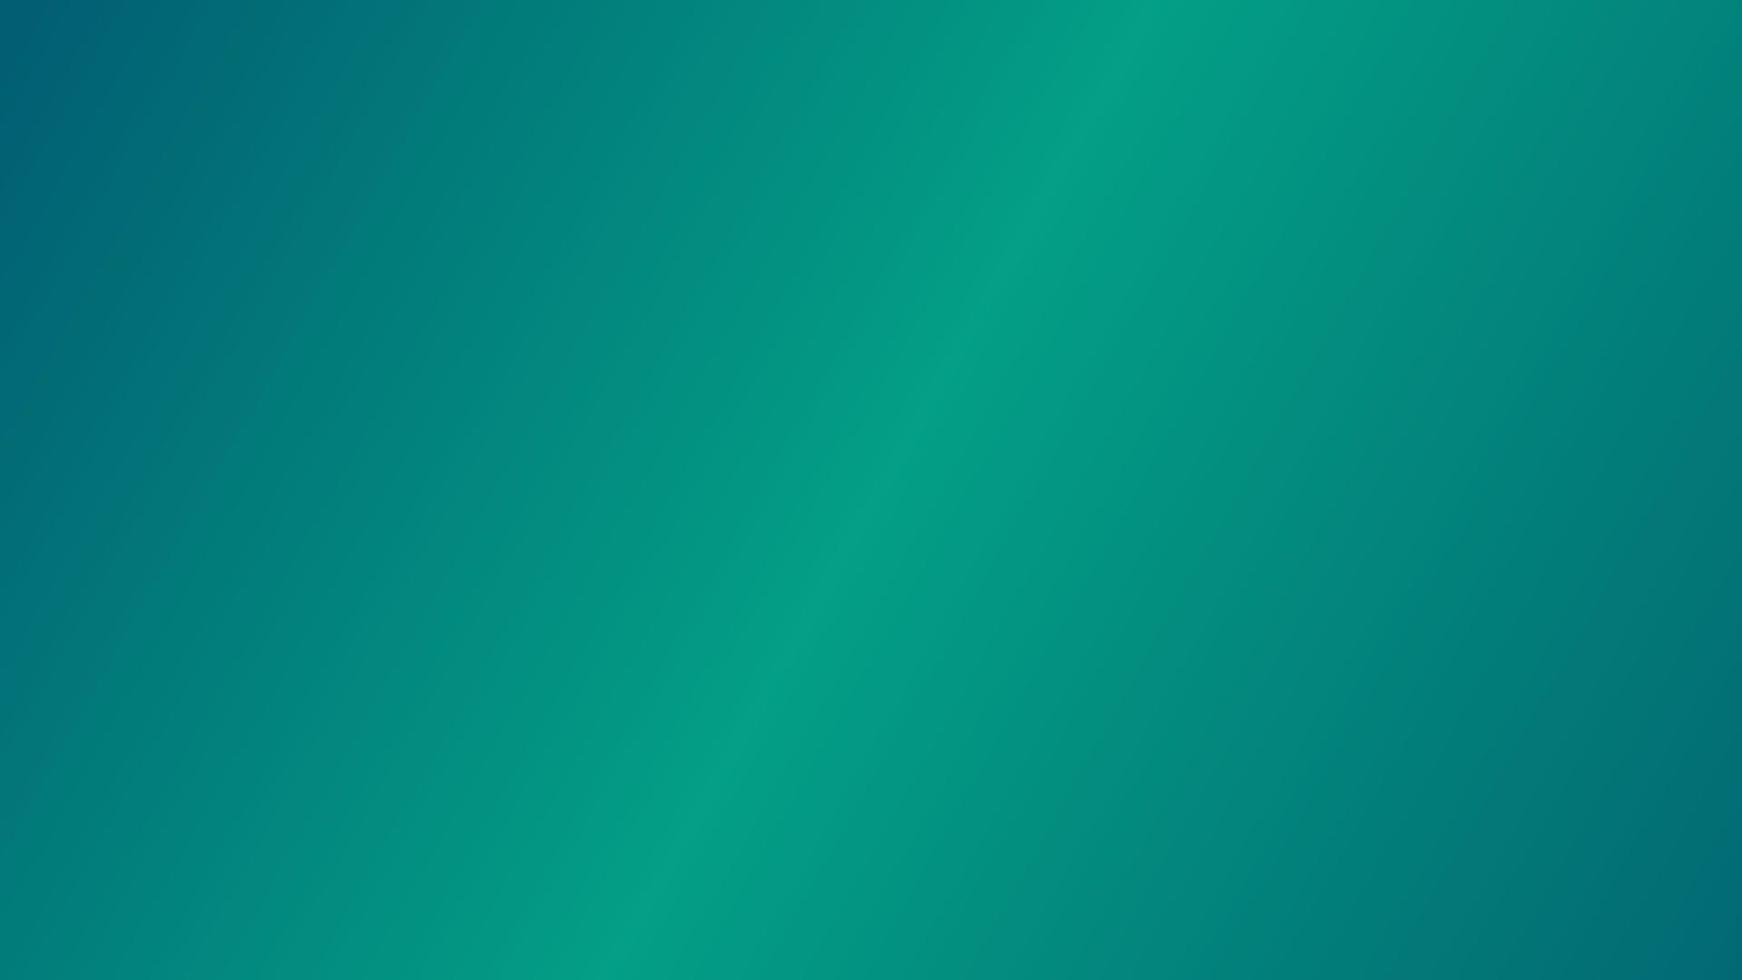 abstracte gradiëntachtergrond groen en blauwgroen perfect voor ontwerp, behang, bevordering, presentatie, website, banner enz. afbeeldingsachtergrond vector